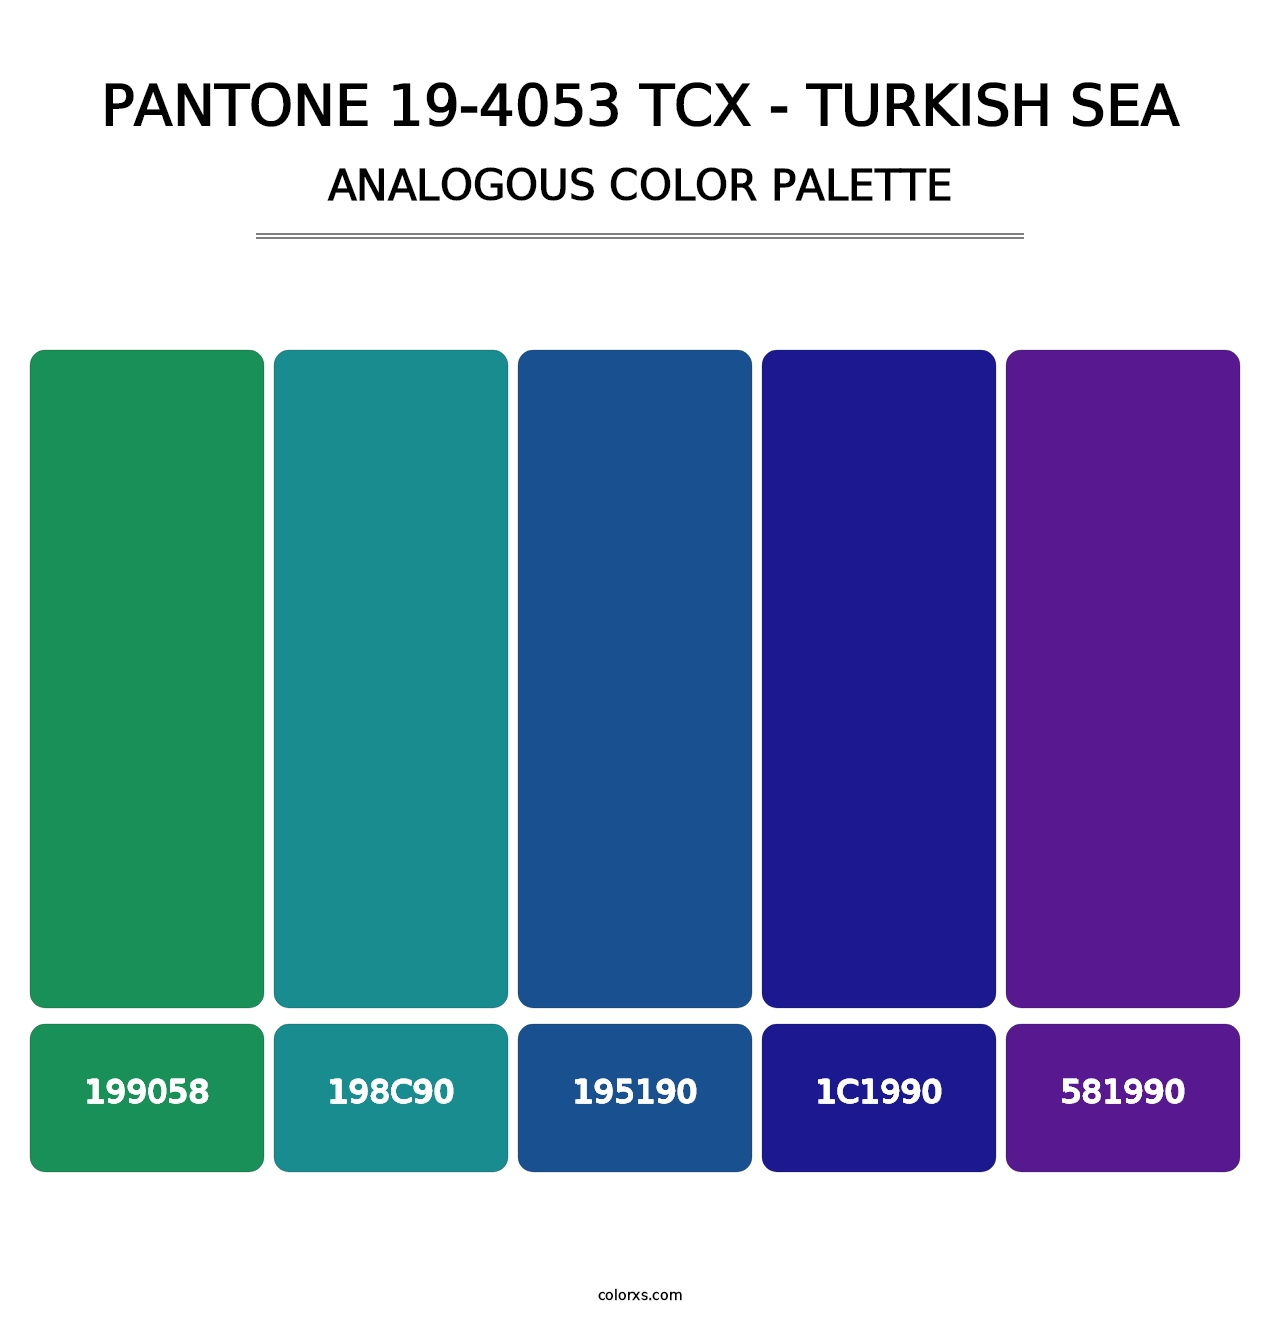 PANTONE 19-4053 TCX - Turkish Sea - Analogous Color Palette